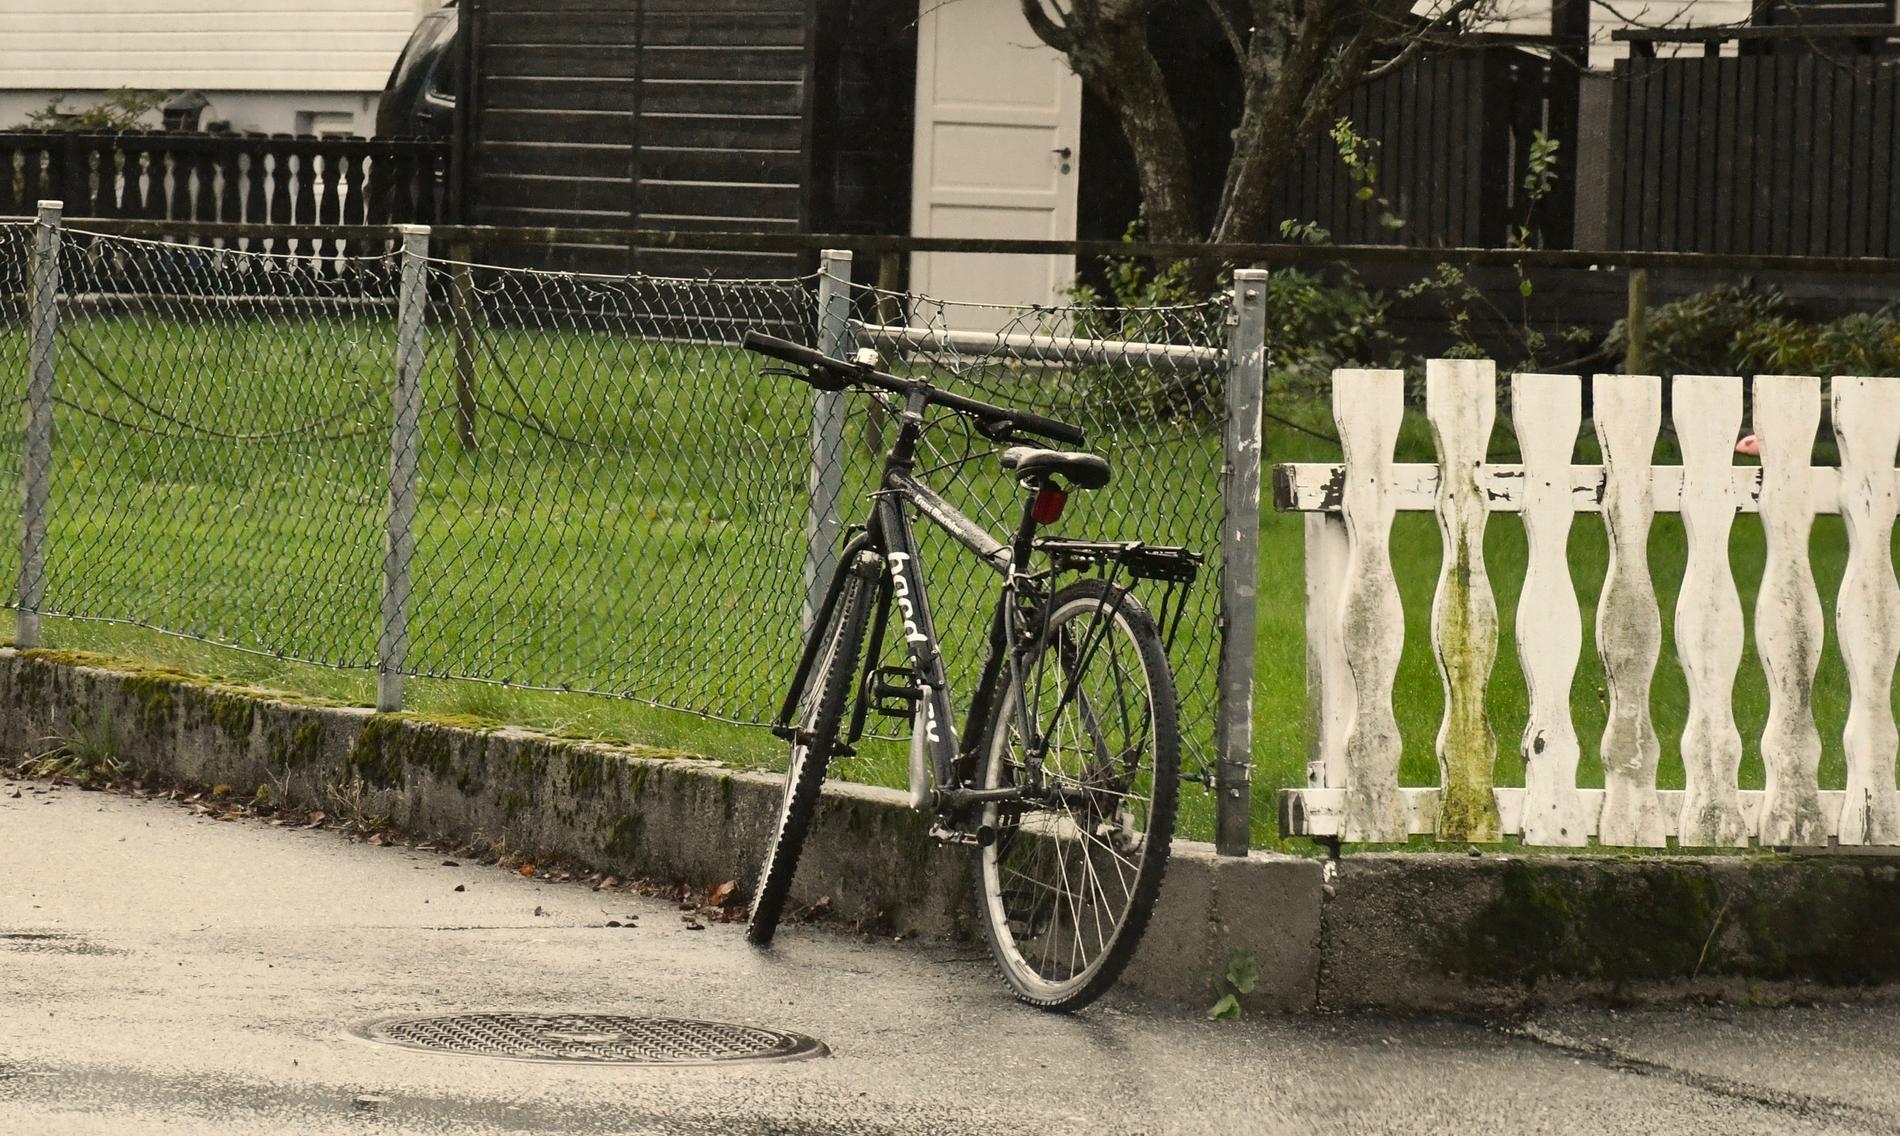  Du ser dem over store deler av kommunen, sykler som enten står som dette - eller som ligger og slenger. De aller fleste av dem er stjålet.